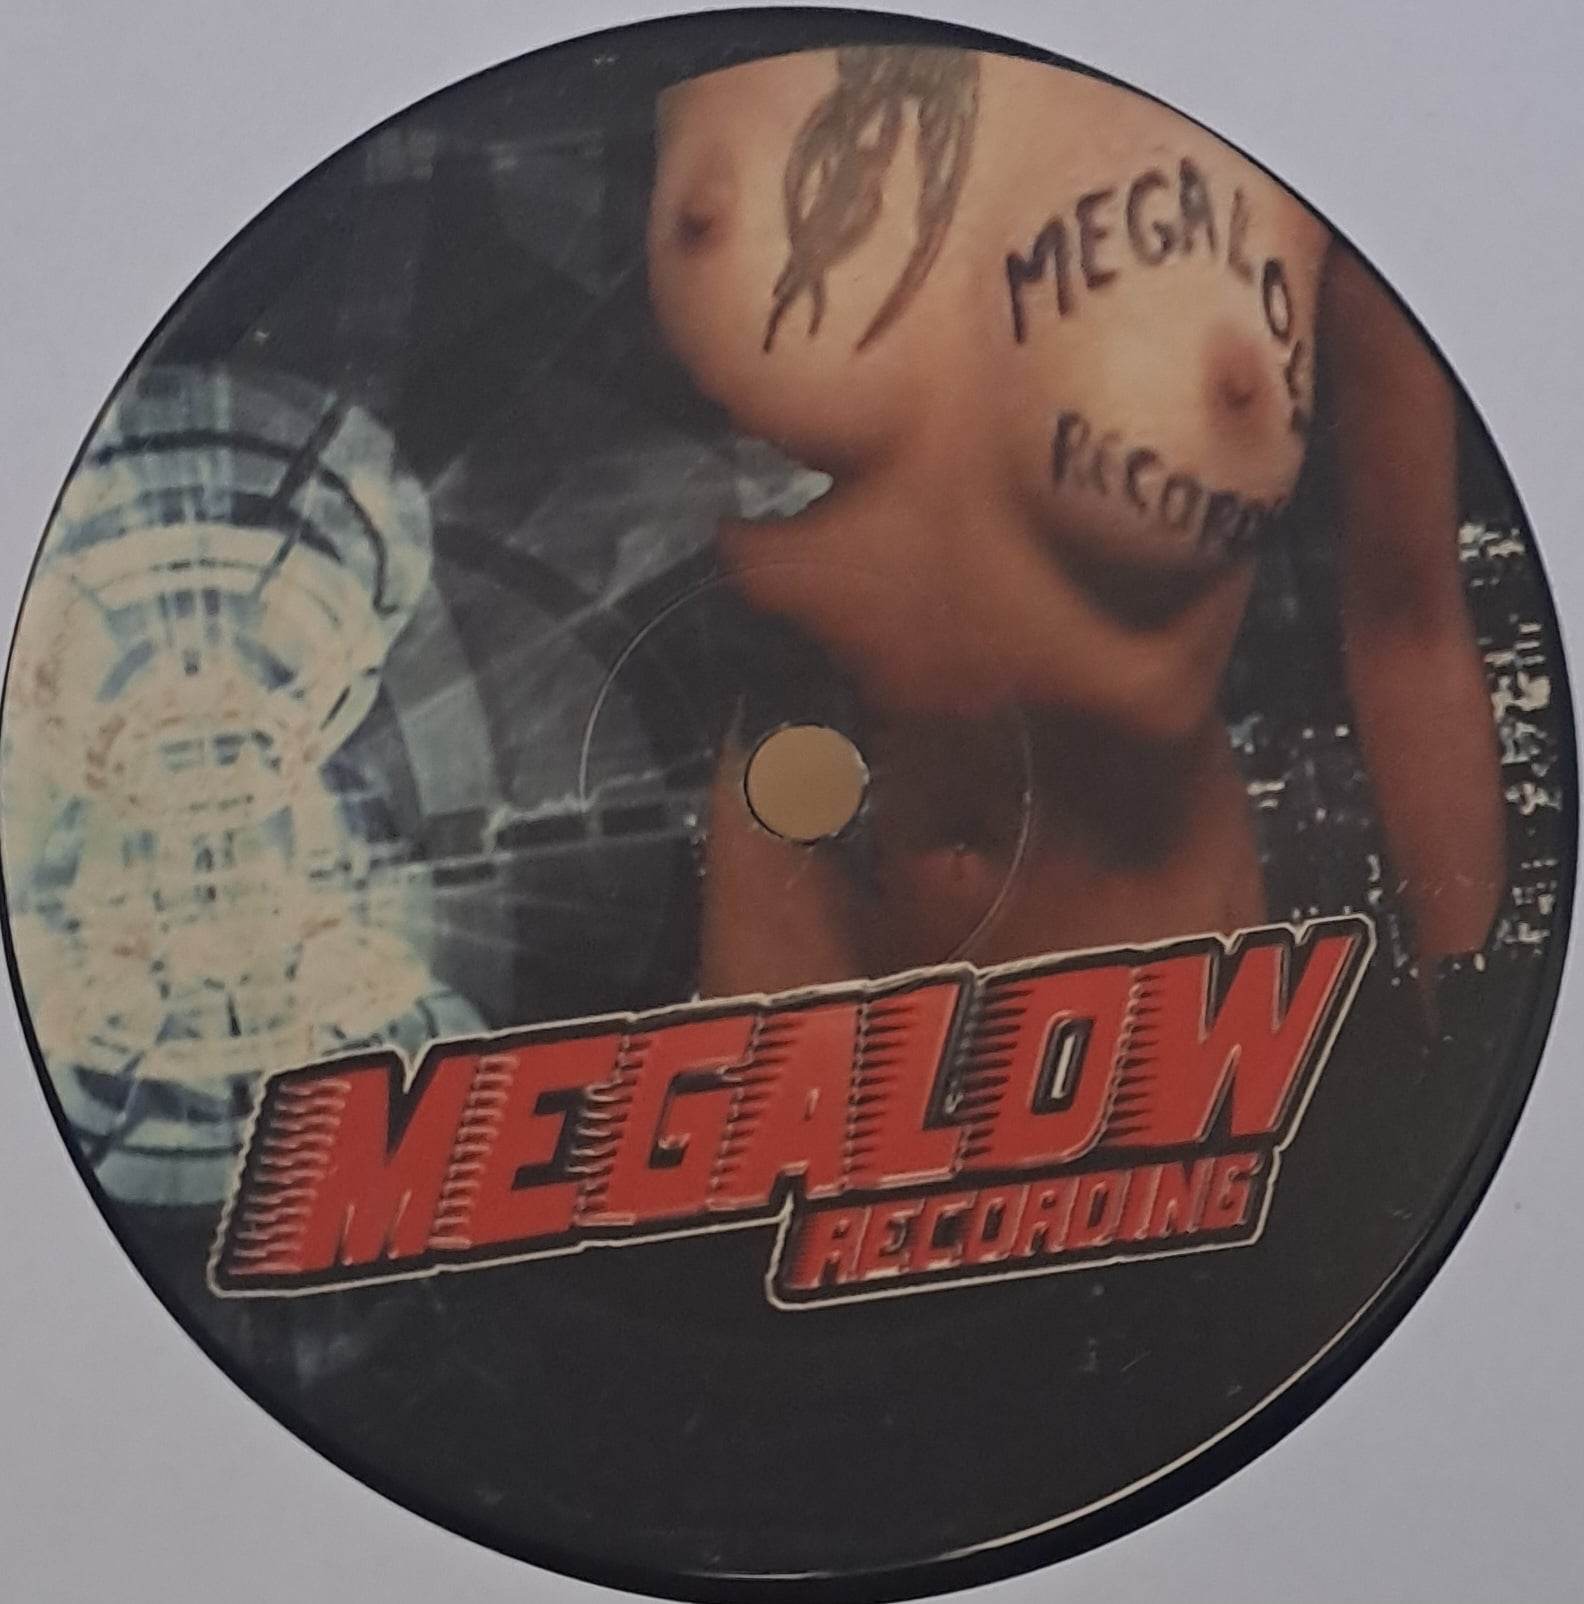 Megalow 04 - vinyle hard techno